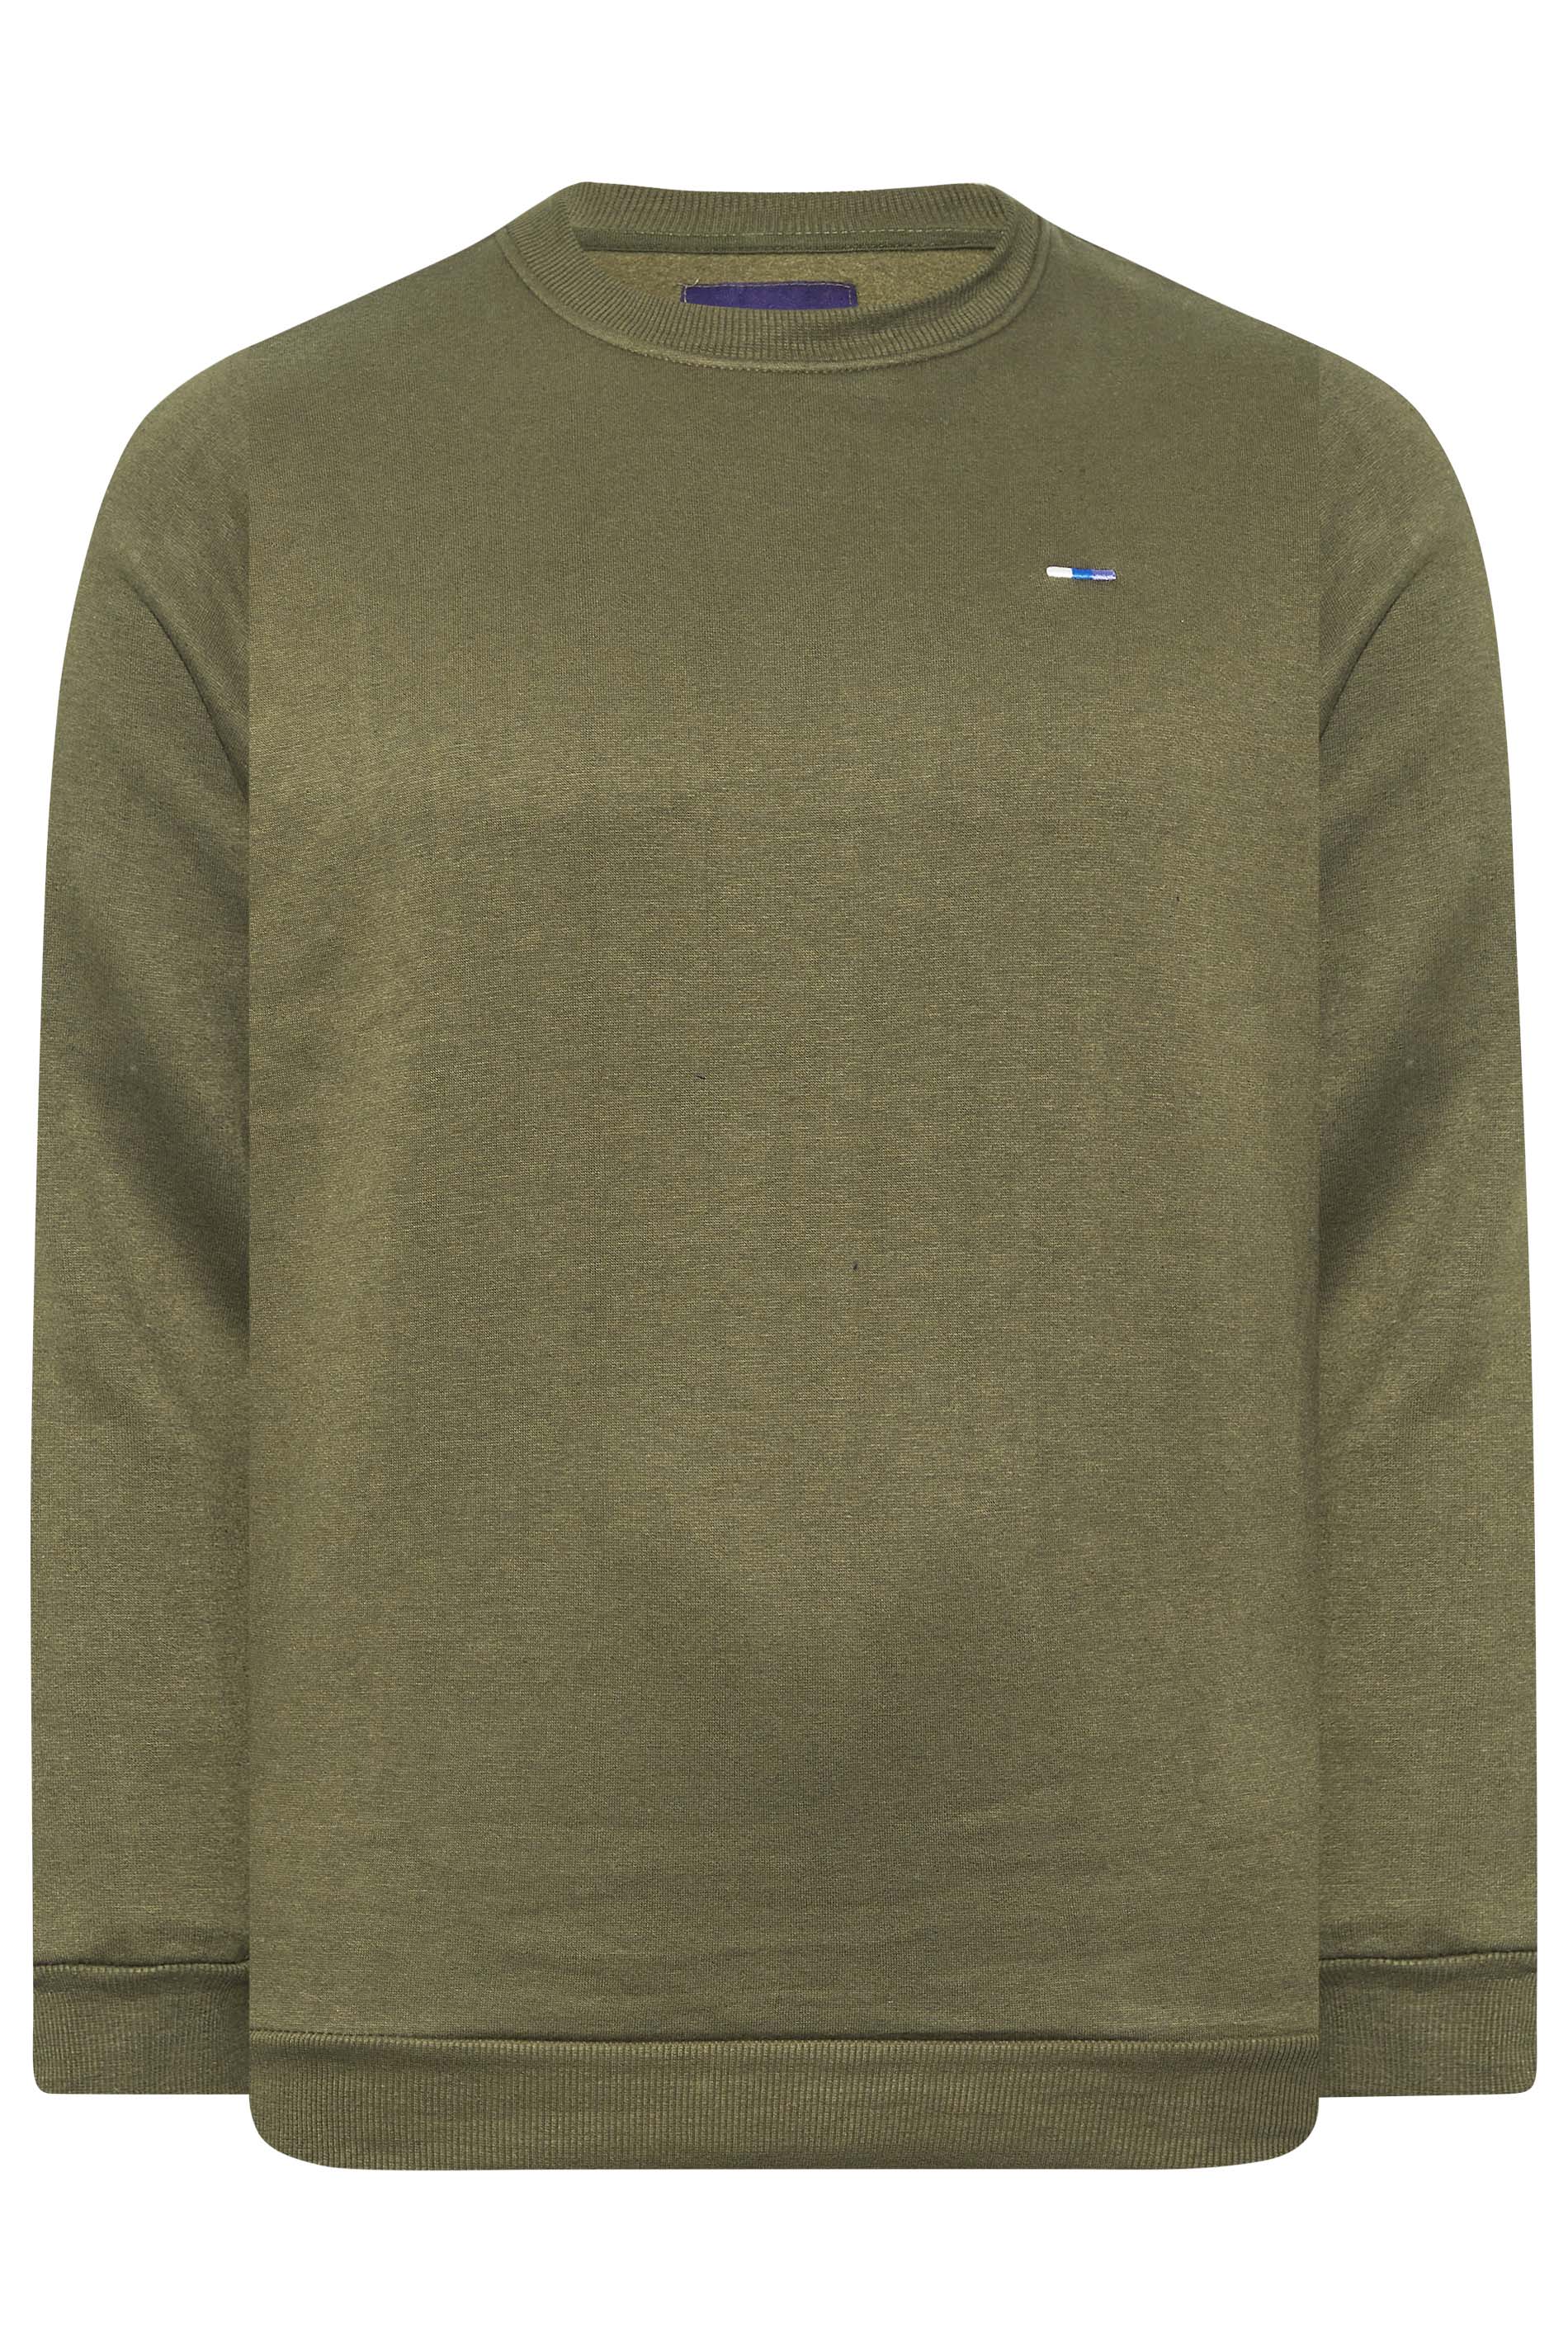 BadRhino Khaki Green Essential Sweatshirt | BadRhino 3